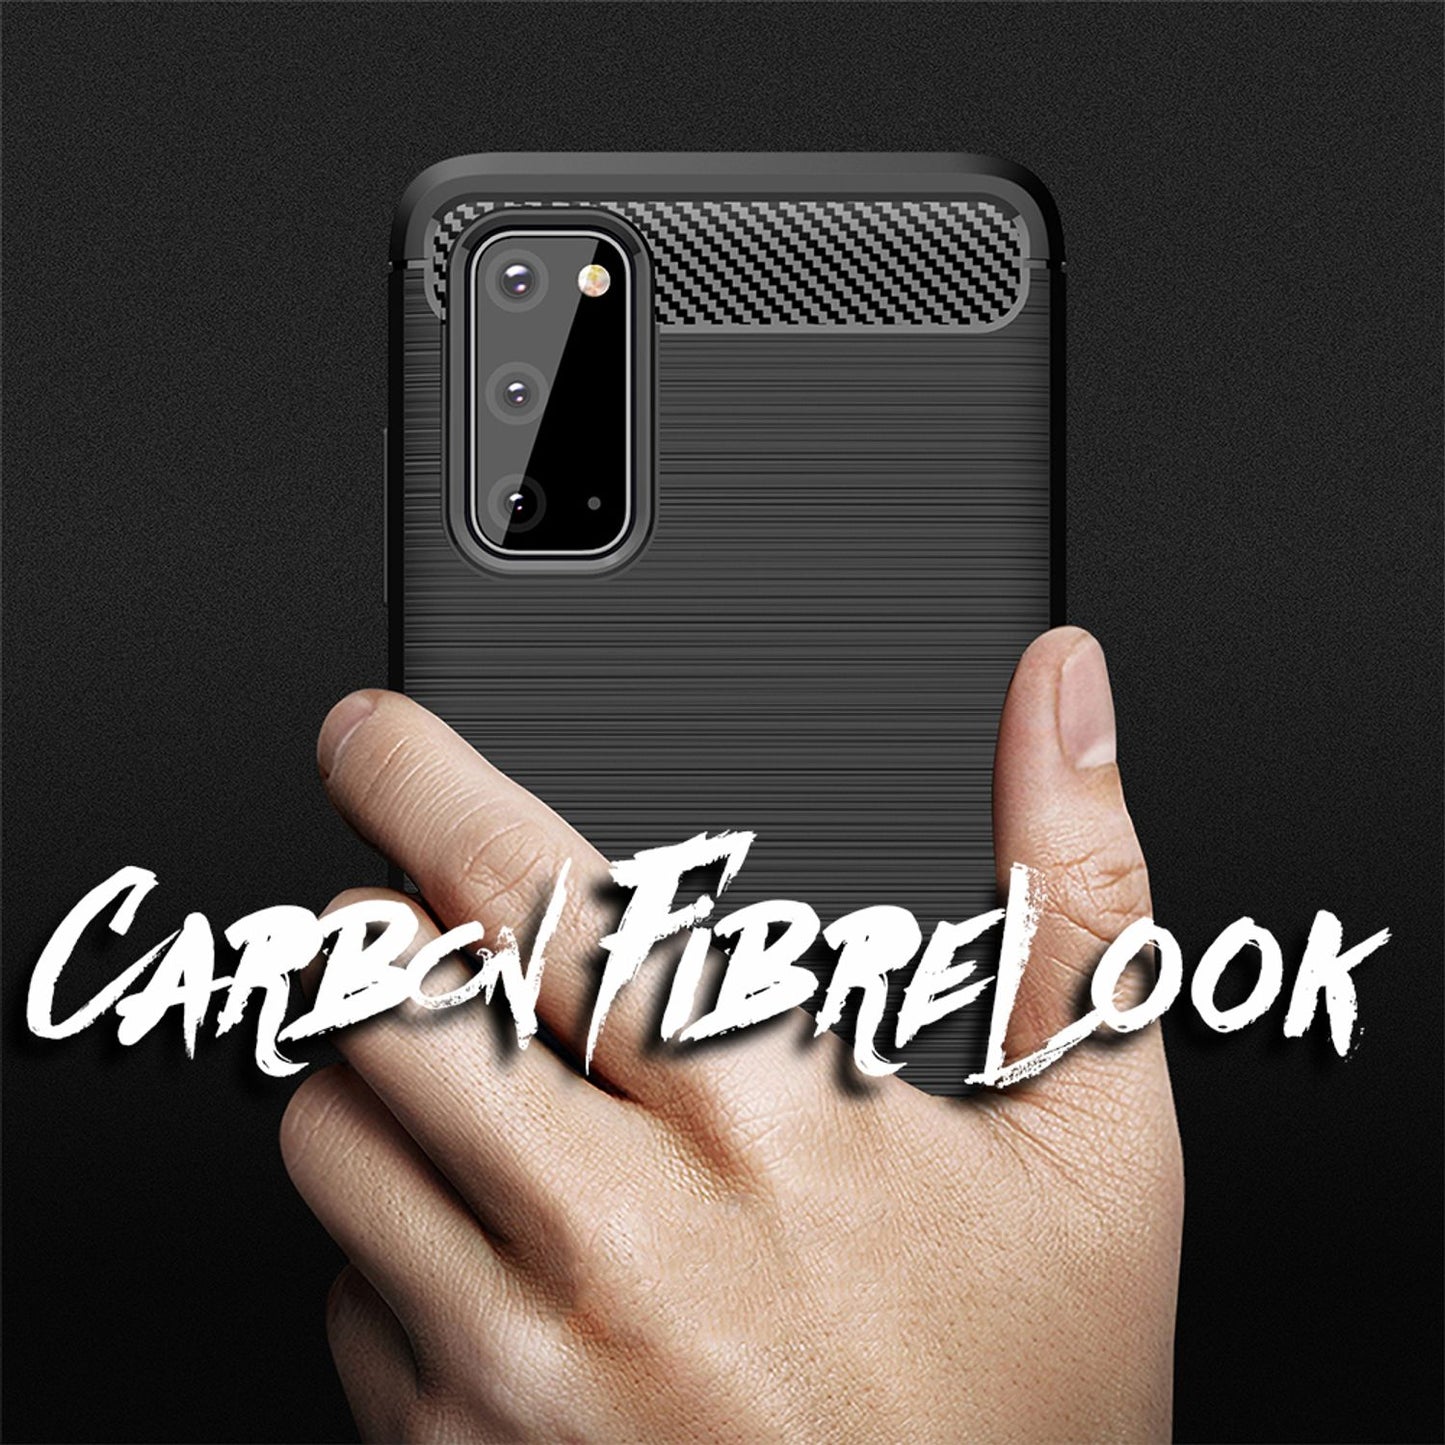 NALIA Carbon Look Handy Hülle für Samsung Galaxy S20, Stoßfestes Silikon Cover